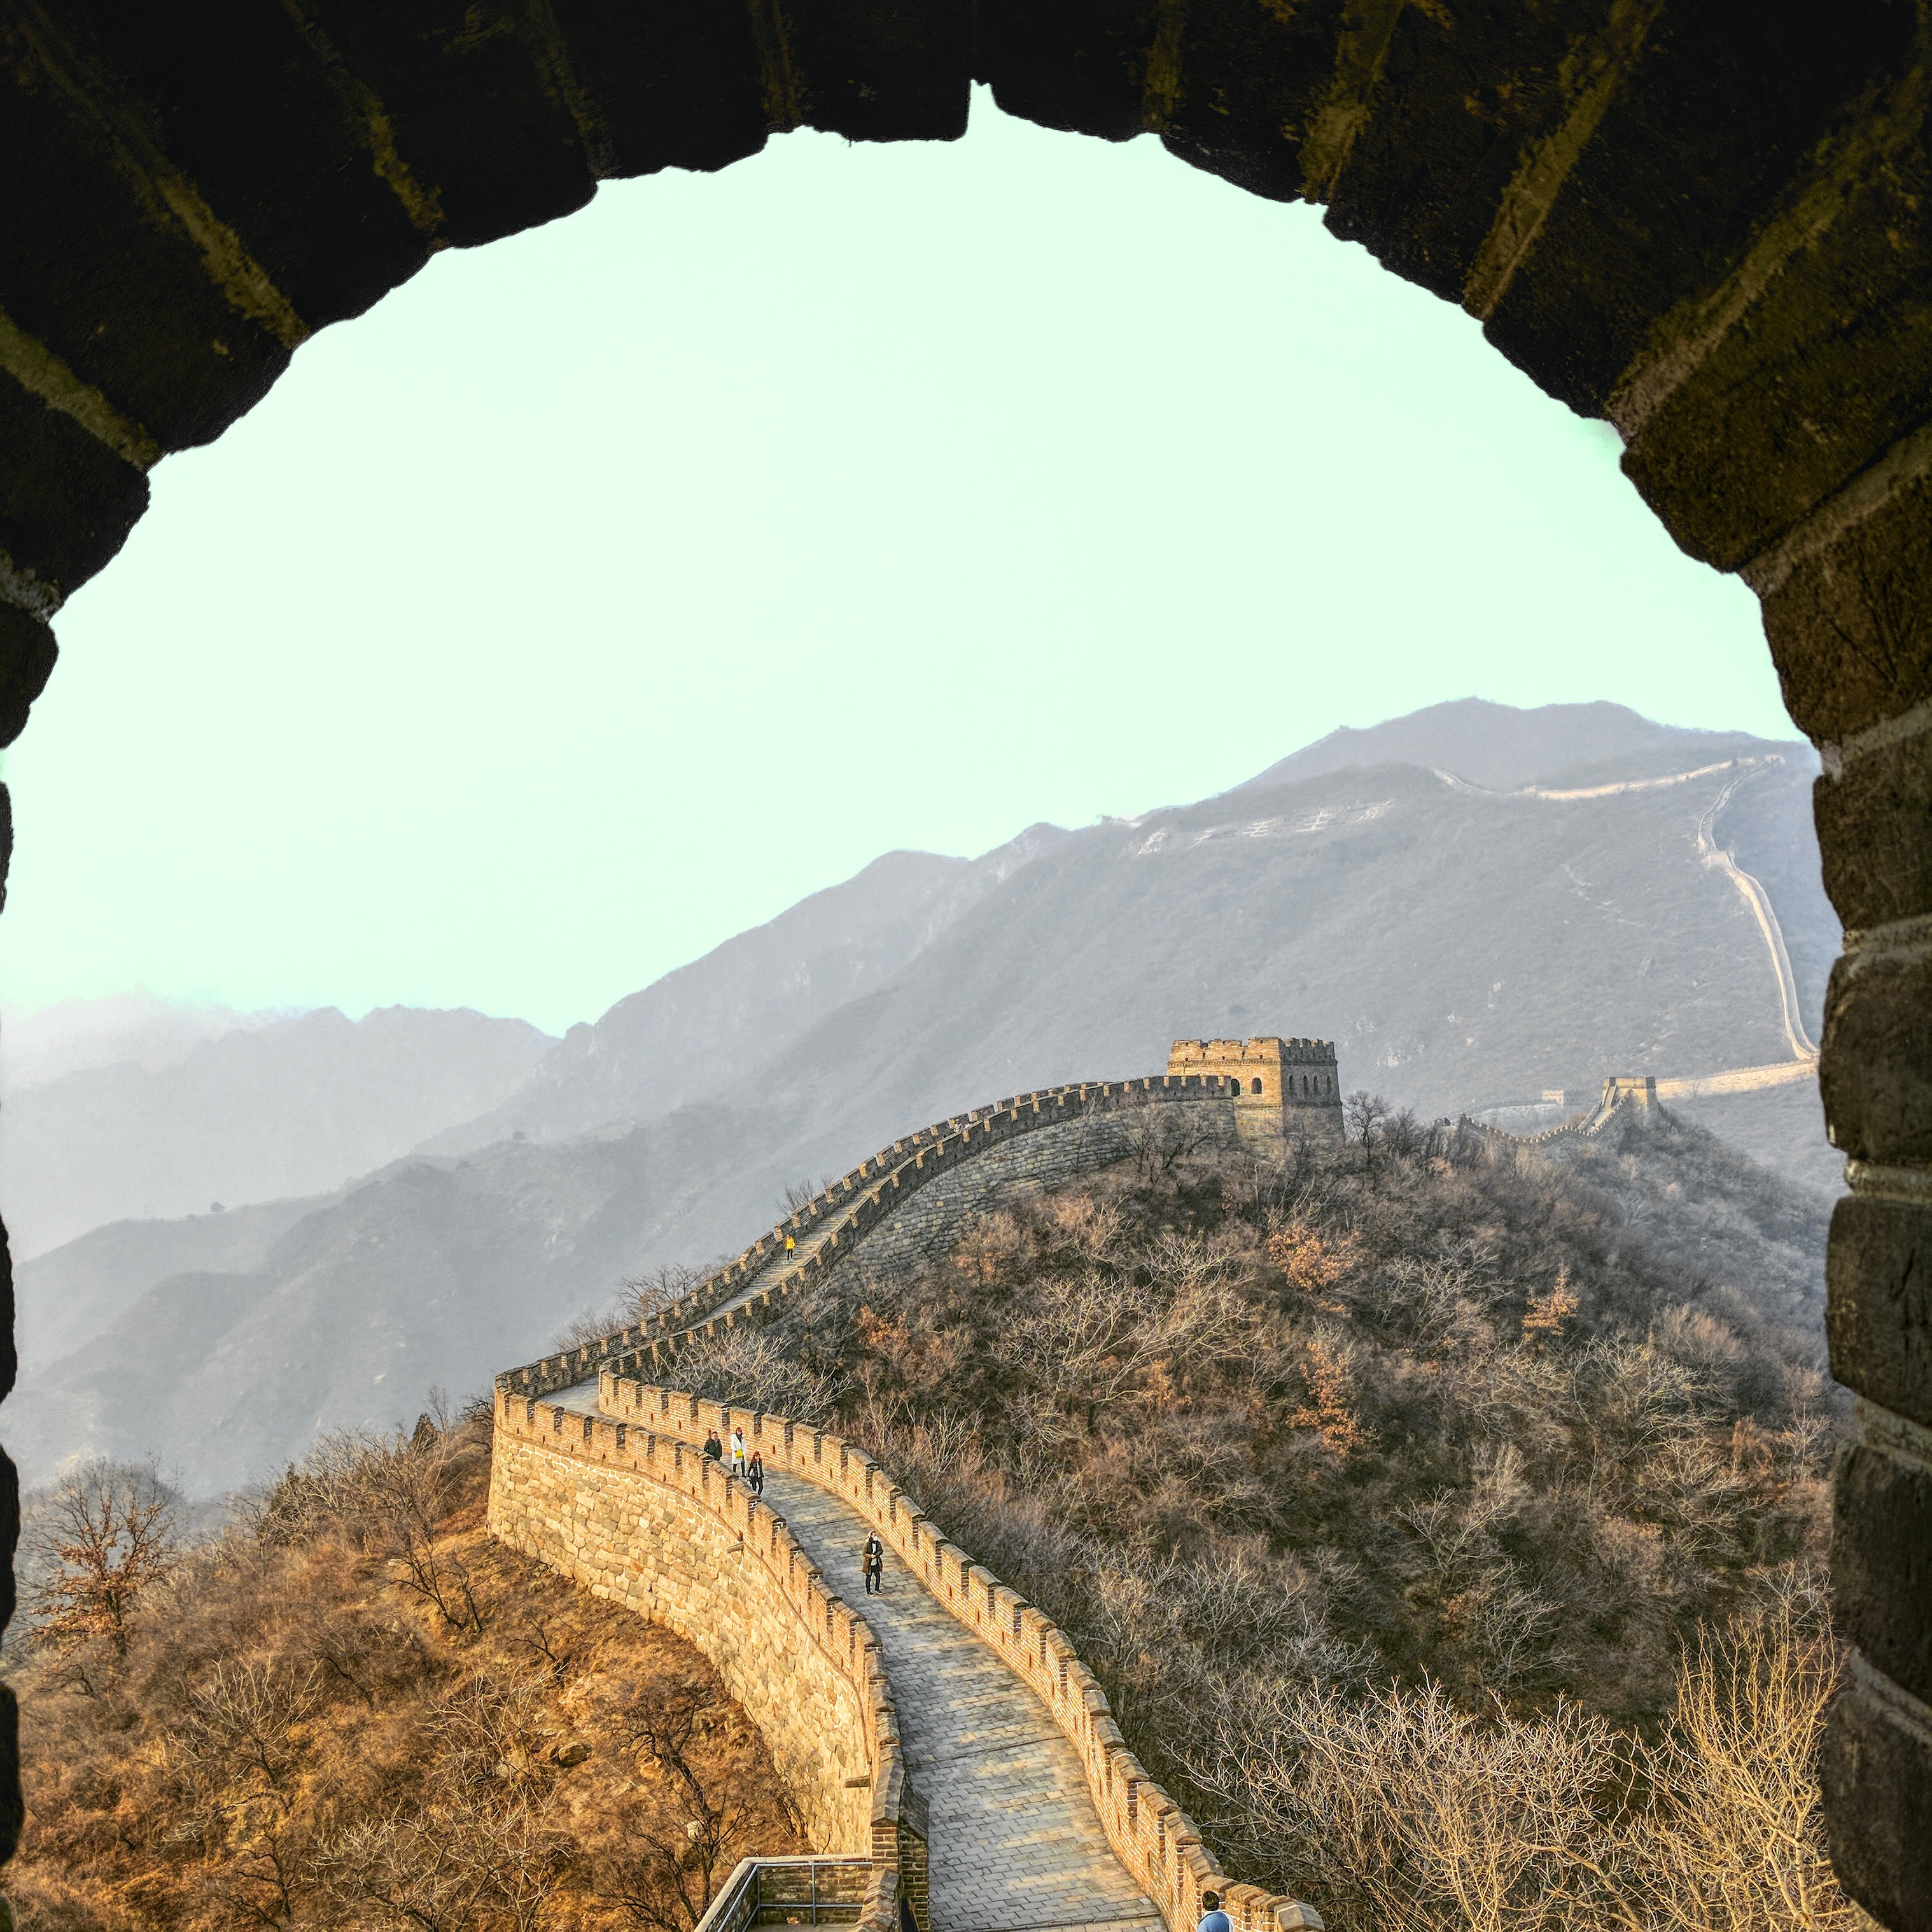 Great Wall of China, Robert Nyman on Unsplash